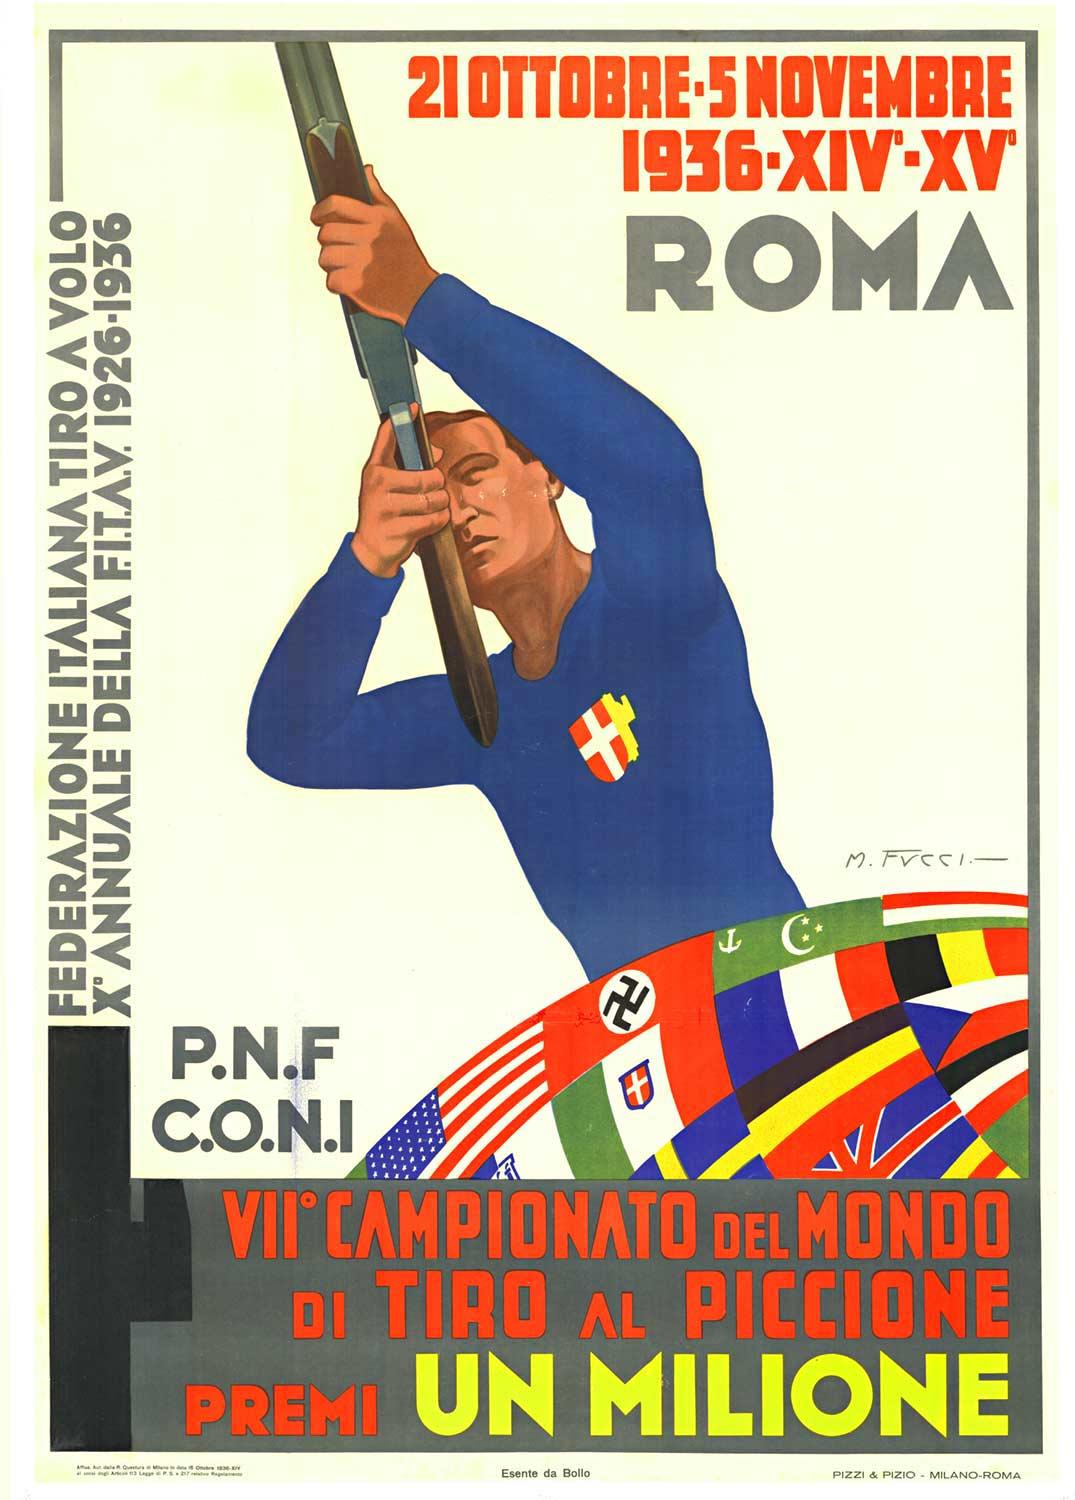 Original "Campionato del Mondo, Tiro al Piccione" vintage sports poster